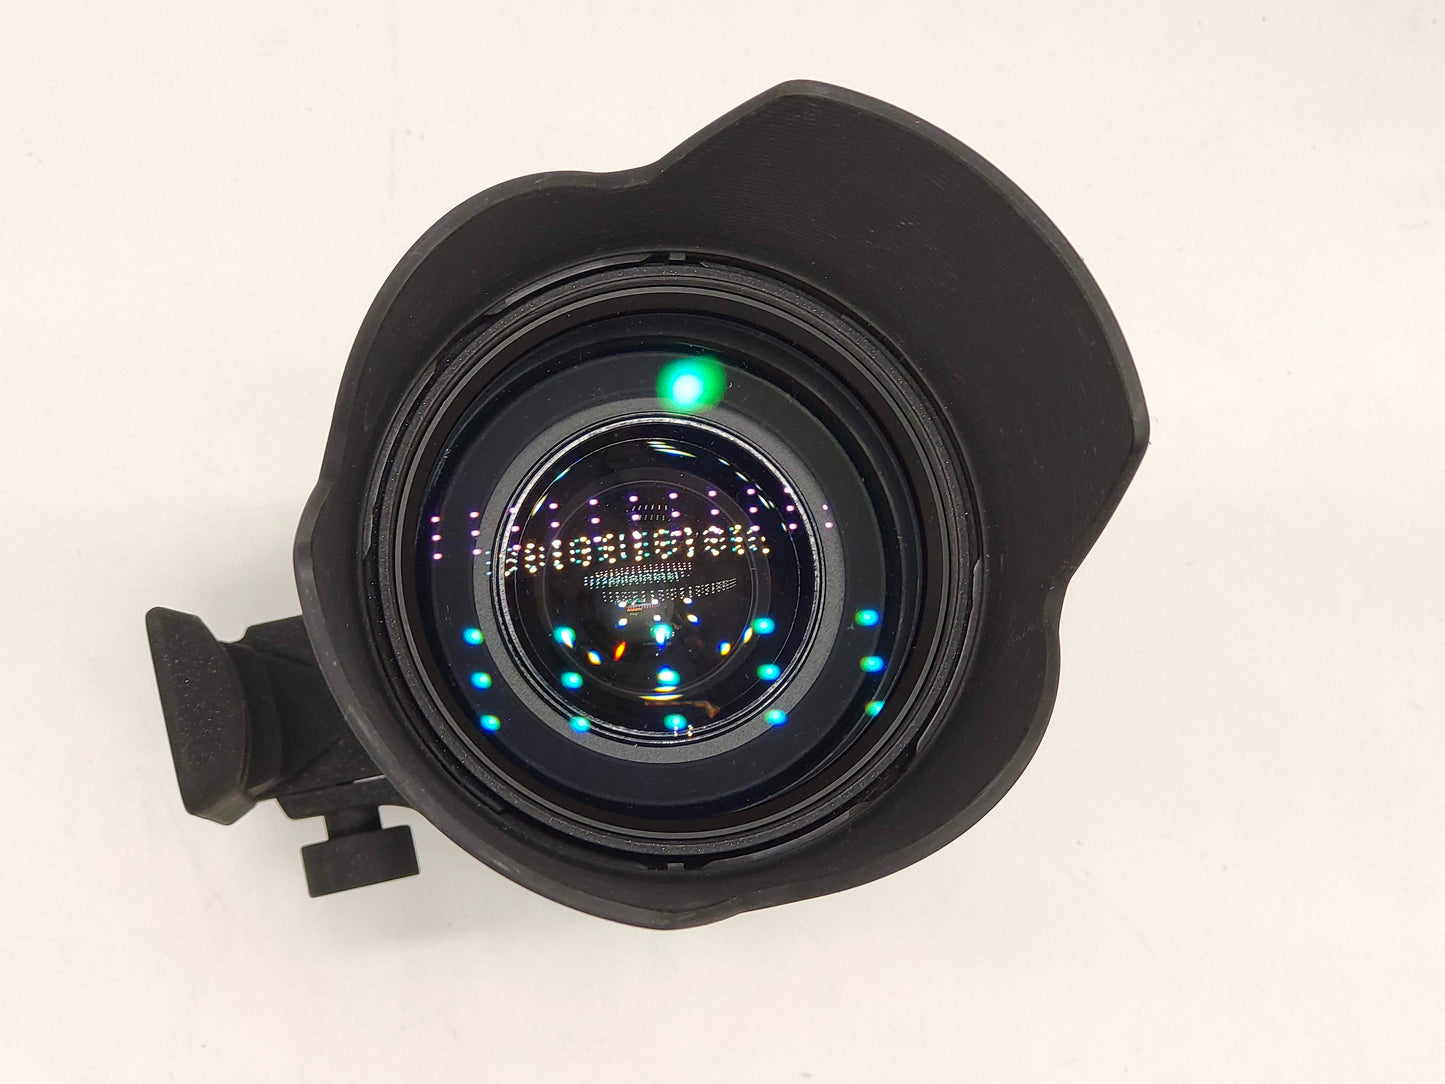 Sigma 50-500mm APO zoom lens for Nikon AF SLRs